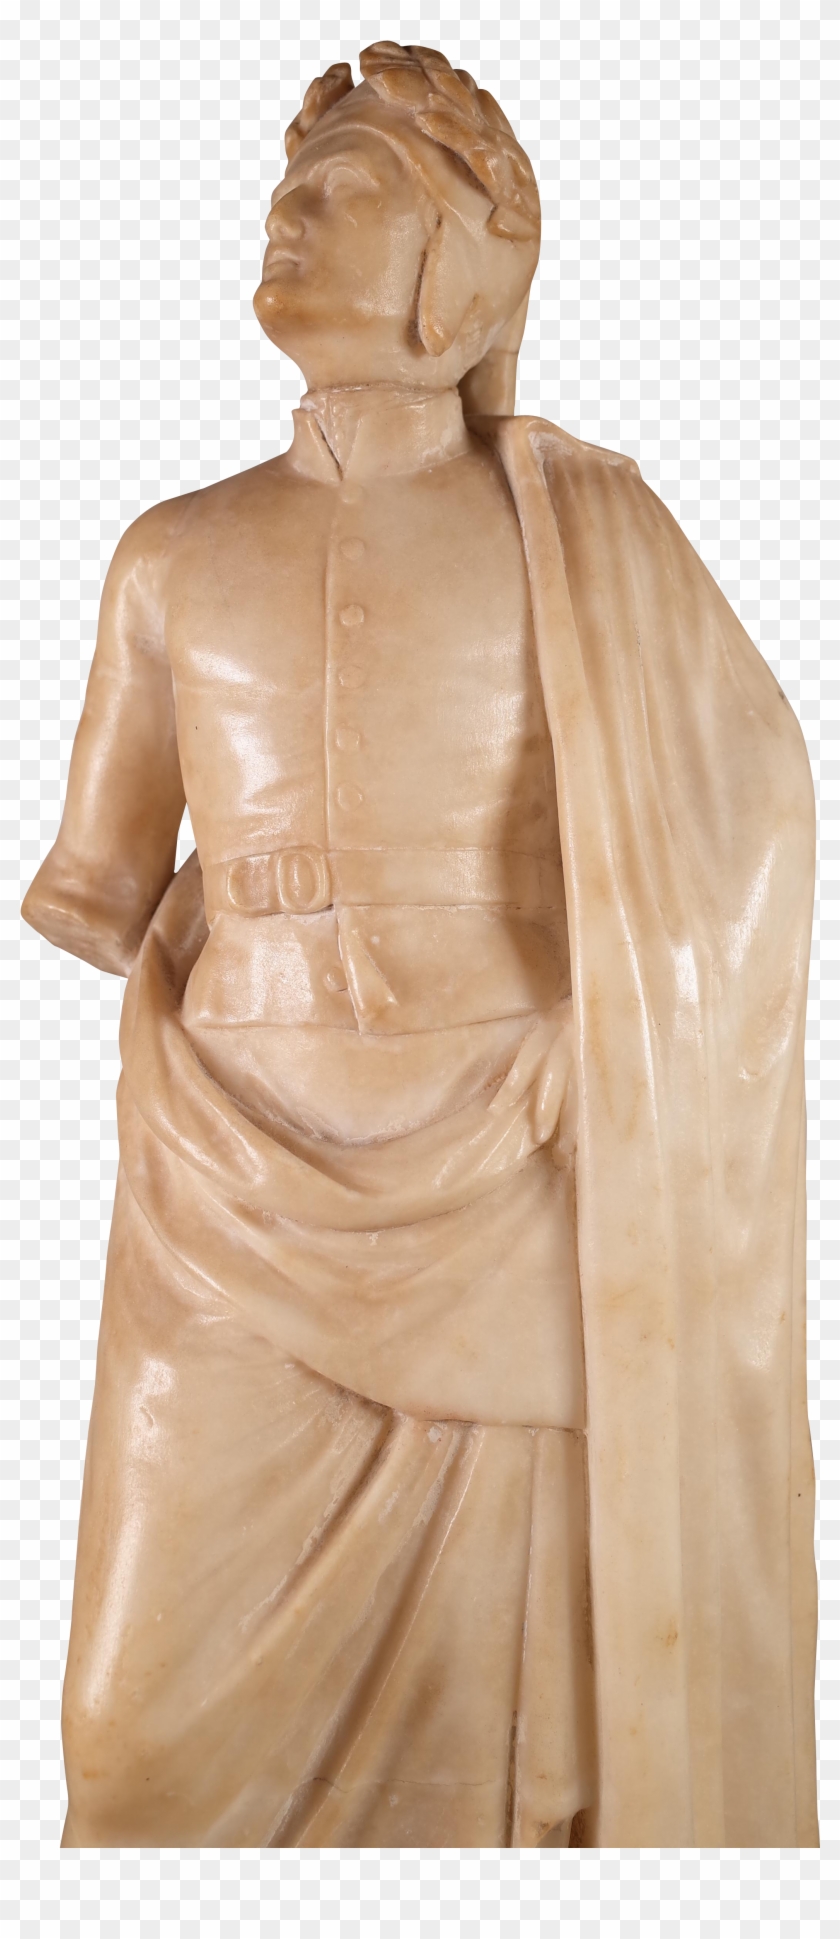 Roman Statue Png Transparent Background - Bronze Sculpture Clipart #2847641